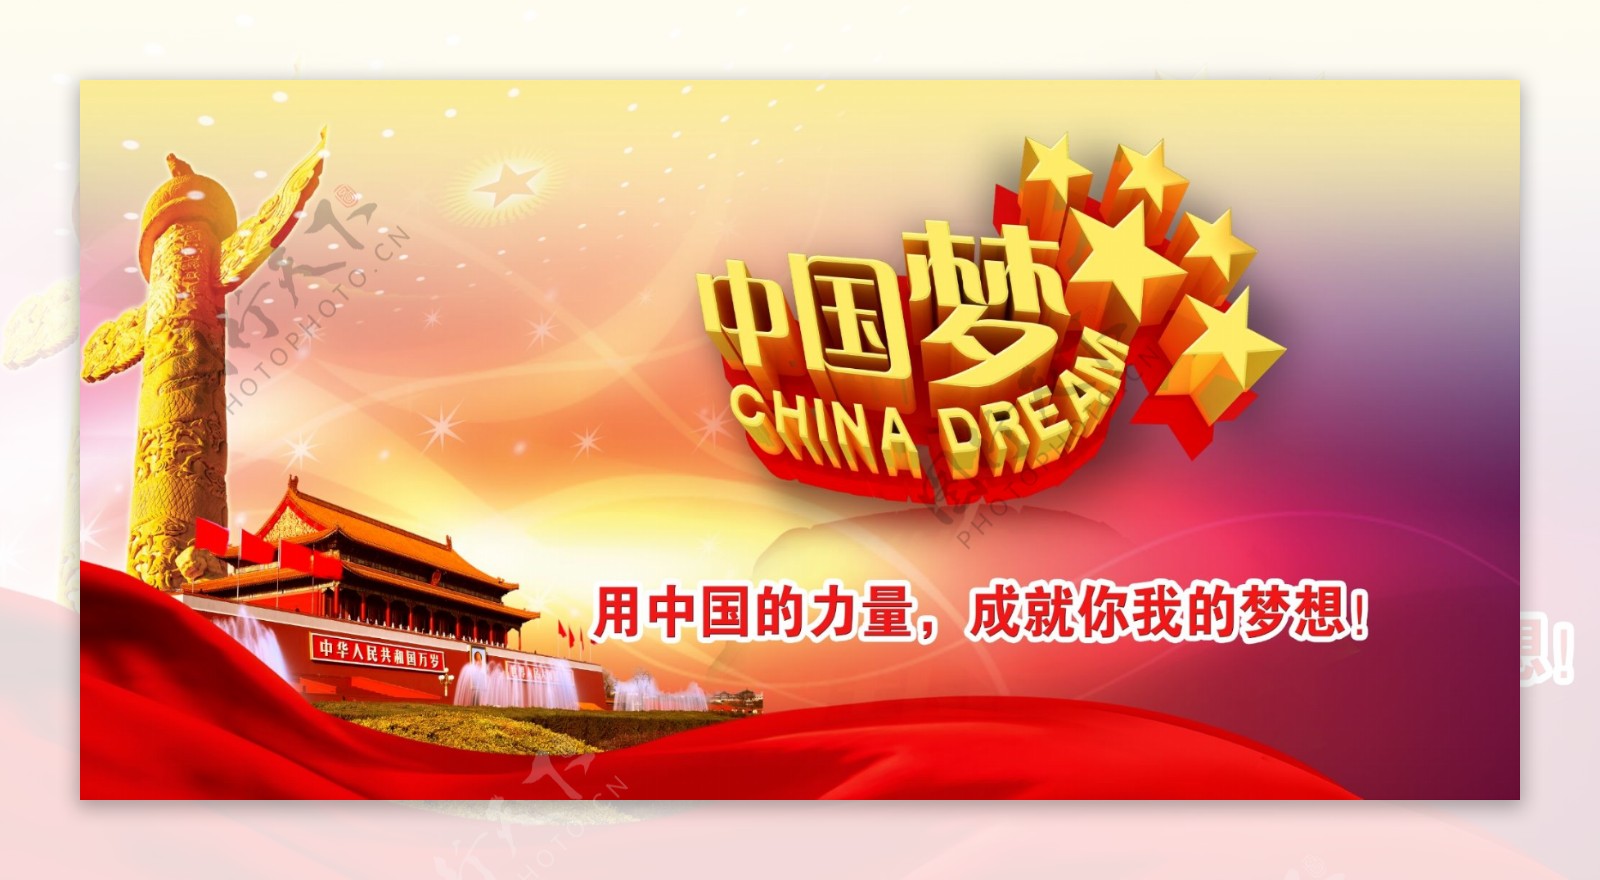 中国梦海报设计图片